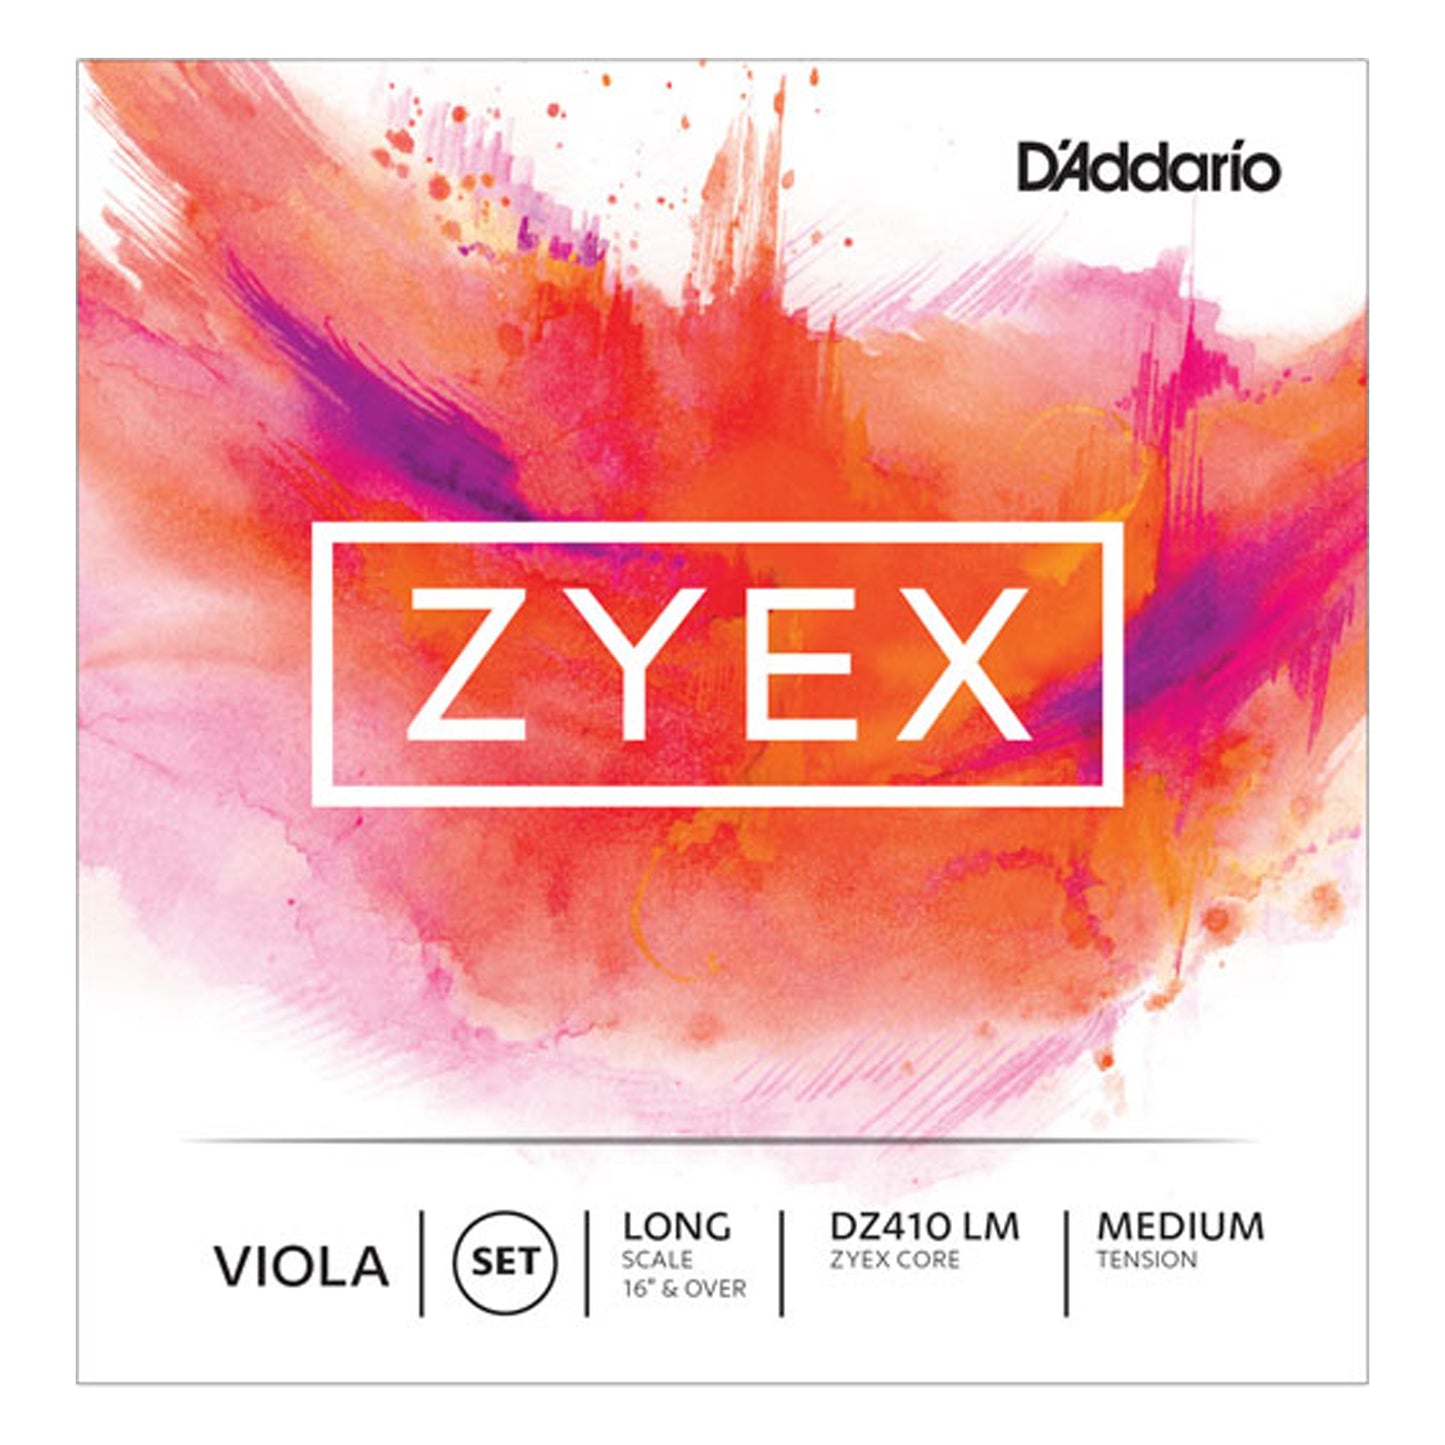 D’Addario Zyex Viola Strings Long Scale Medium Tension